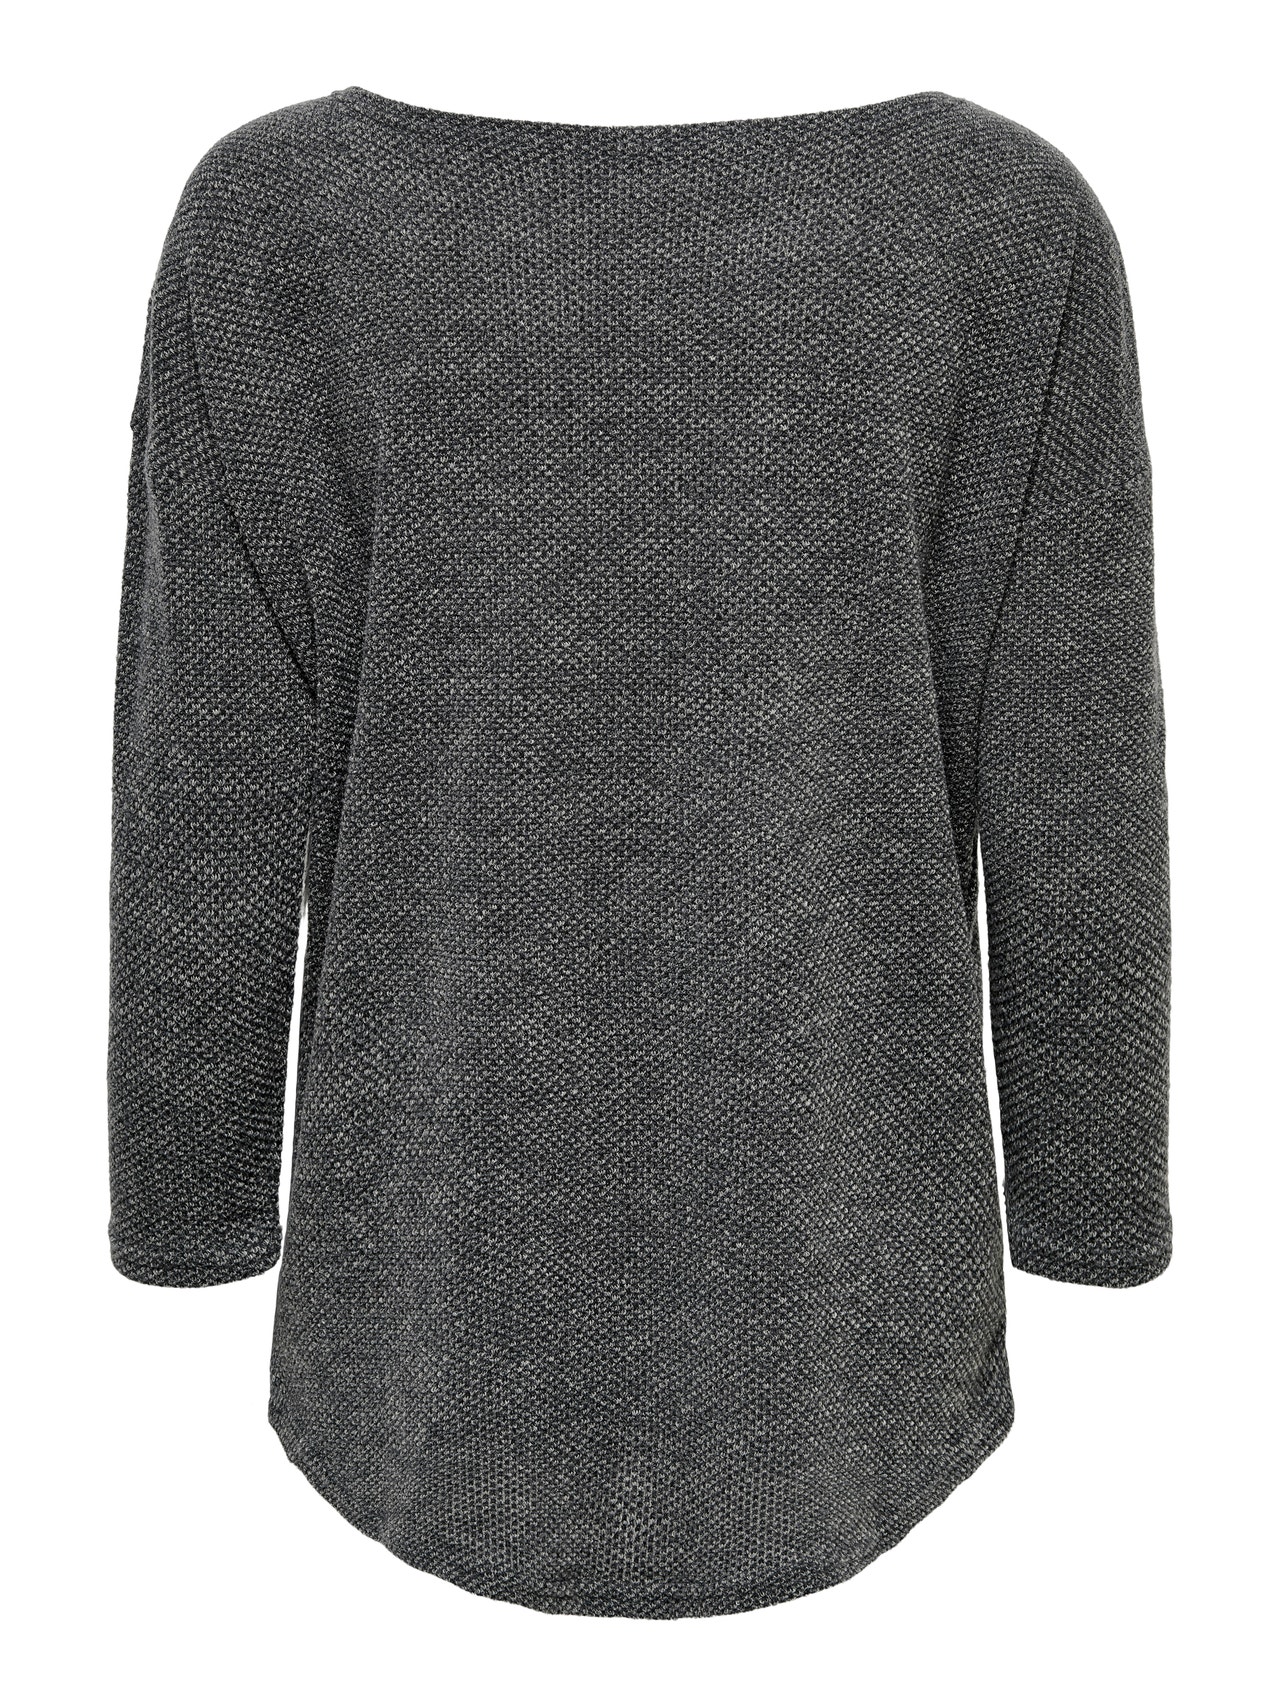 ONLY Oversize 3/4 sleeved top -Dark Grey Melange - 15177776